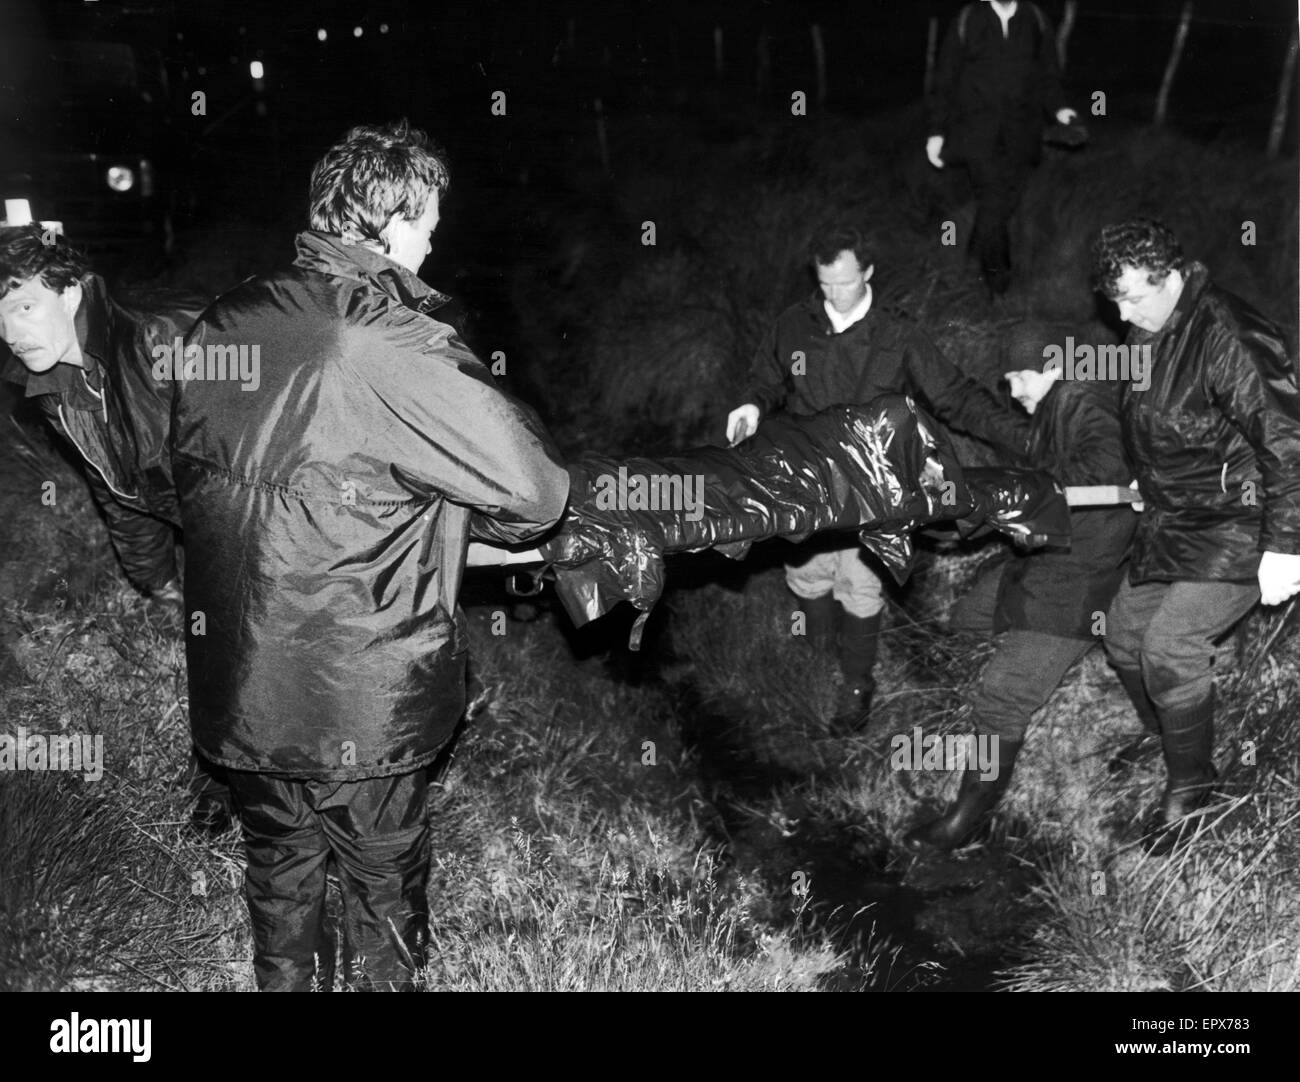 Reste von Pauline Reade, direkt am Saddleworth Moor, in der Nähe von Oldham, in den frühen Morgenstunden des 1. Juli 1987. Pauline Reade wurde entführt und getötet von Ian Brady und Myra Hindley auf 12. Juli 1963. Stockfoto